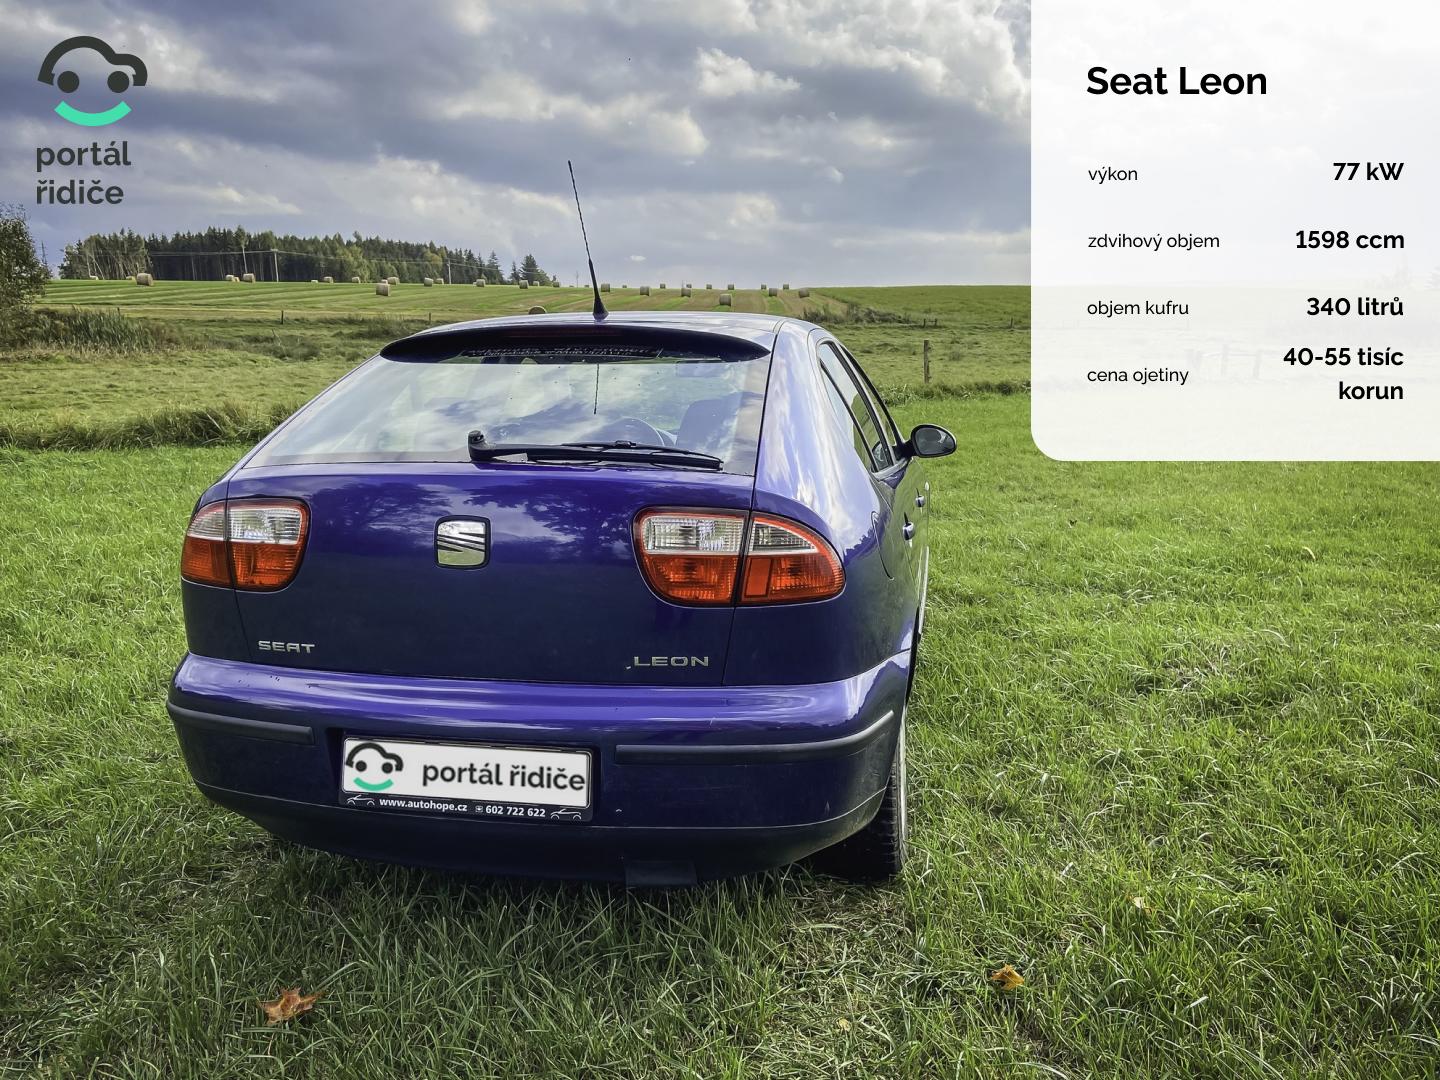 Test ojetiny: Seat Leon 1.6 16V (2003) - Španěl pro nenáročné